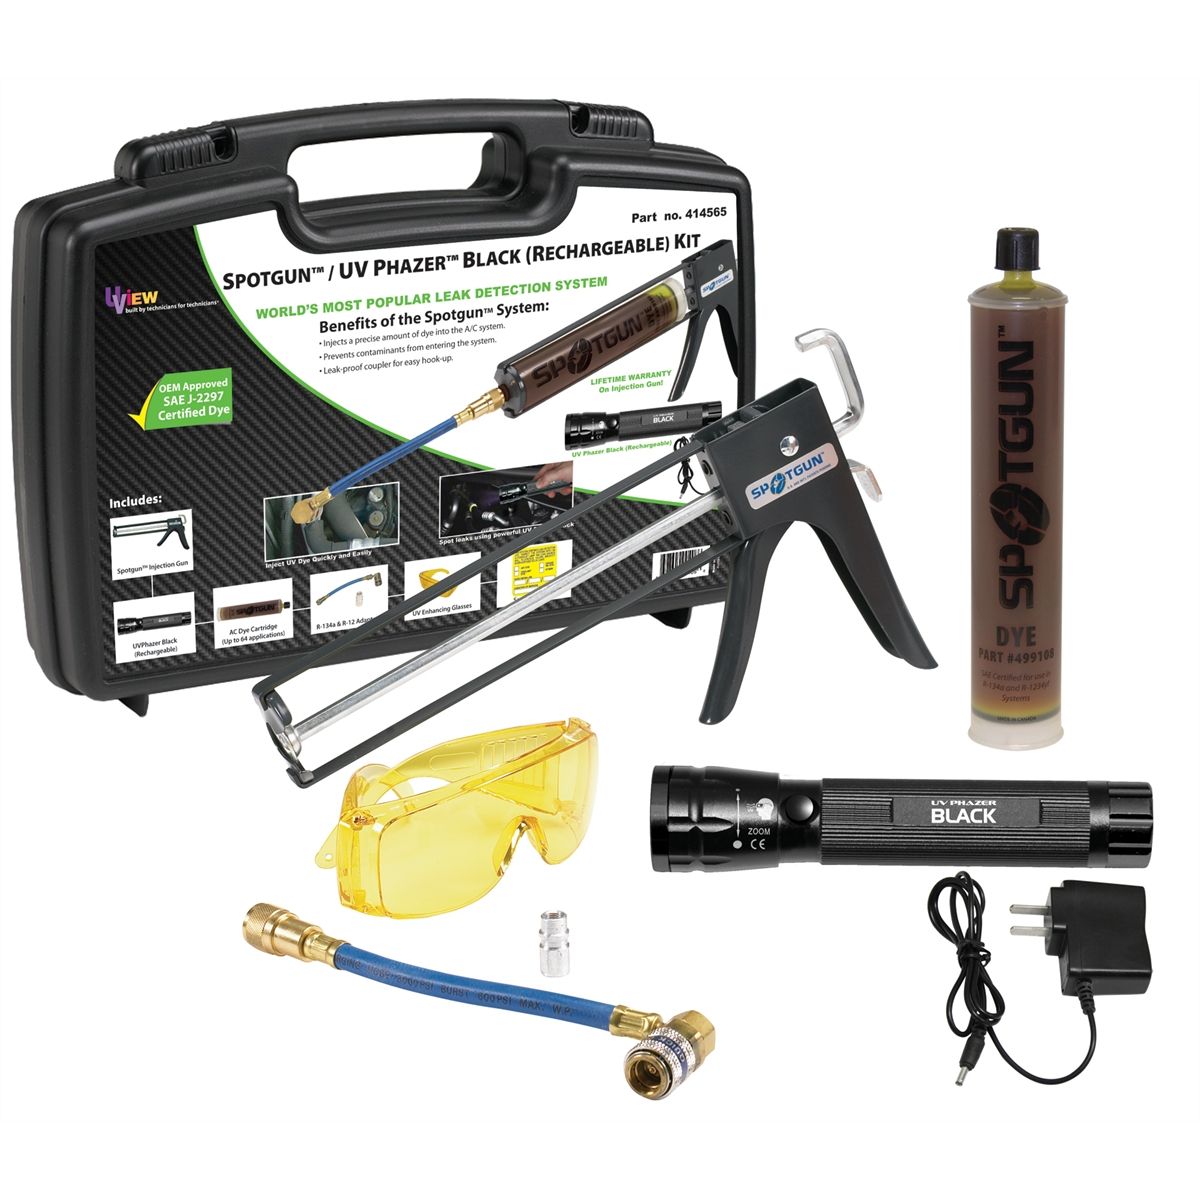 Spotgun/UV Phazer Black Rechargeable Kit